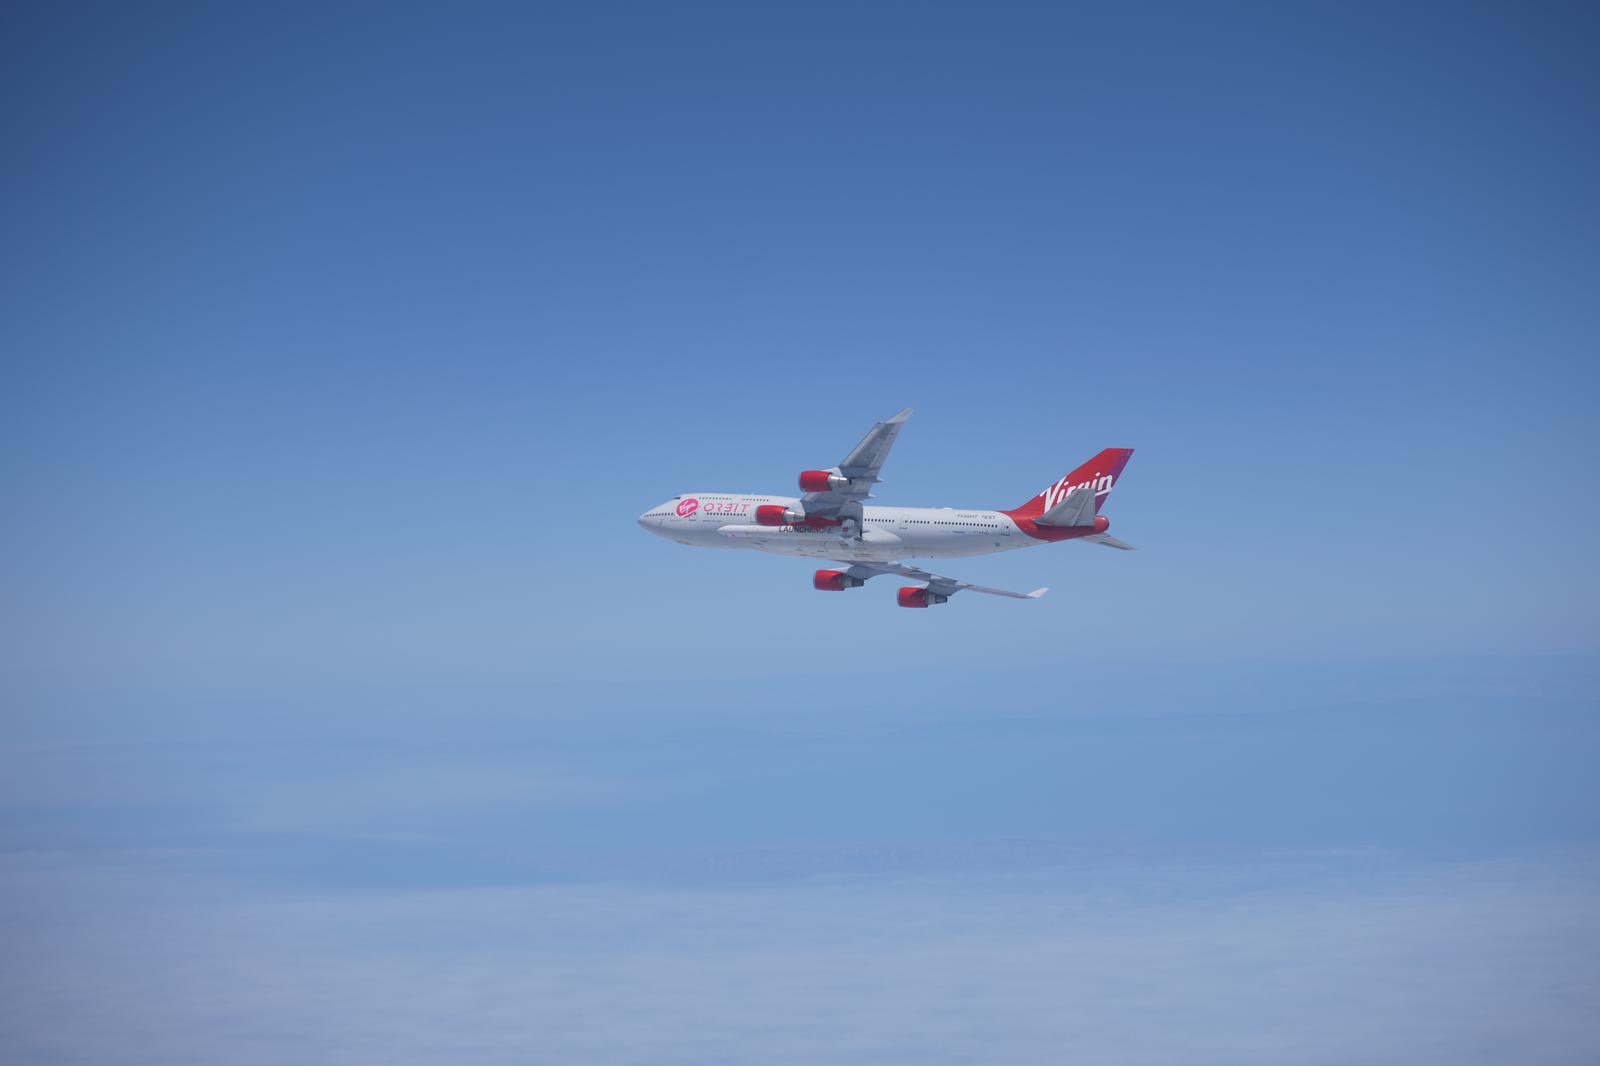 Virgin Orbit falla su primer lanzamiento de cohete desde un avión